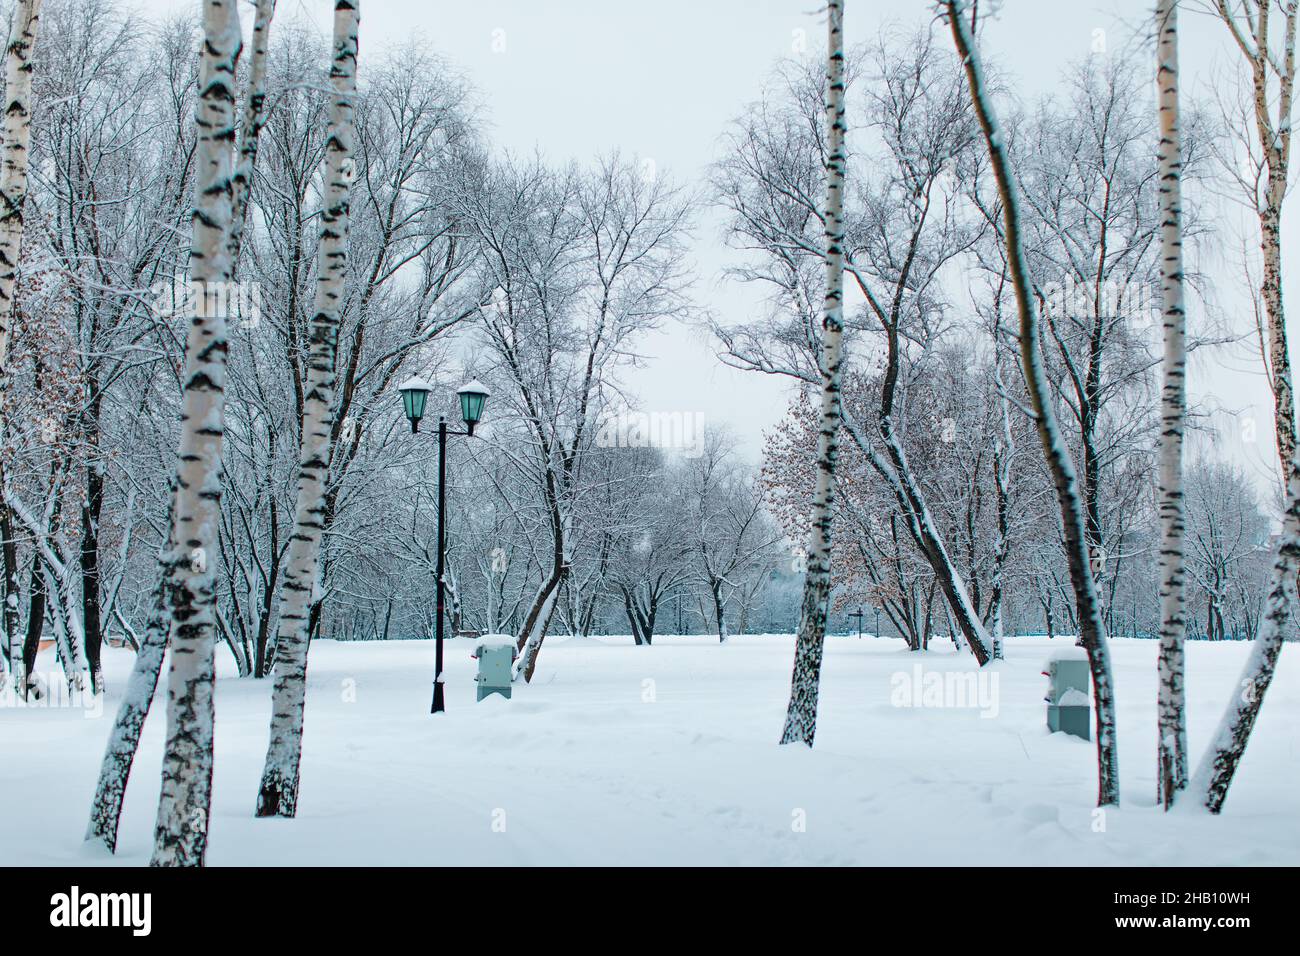 Grands bouleaux couverts de neige blanche et douce dans le parc russe d'hiver.Saison d'hiver dans la nature Banque D'Images